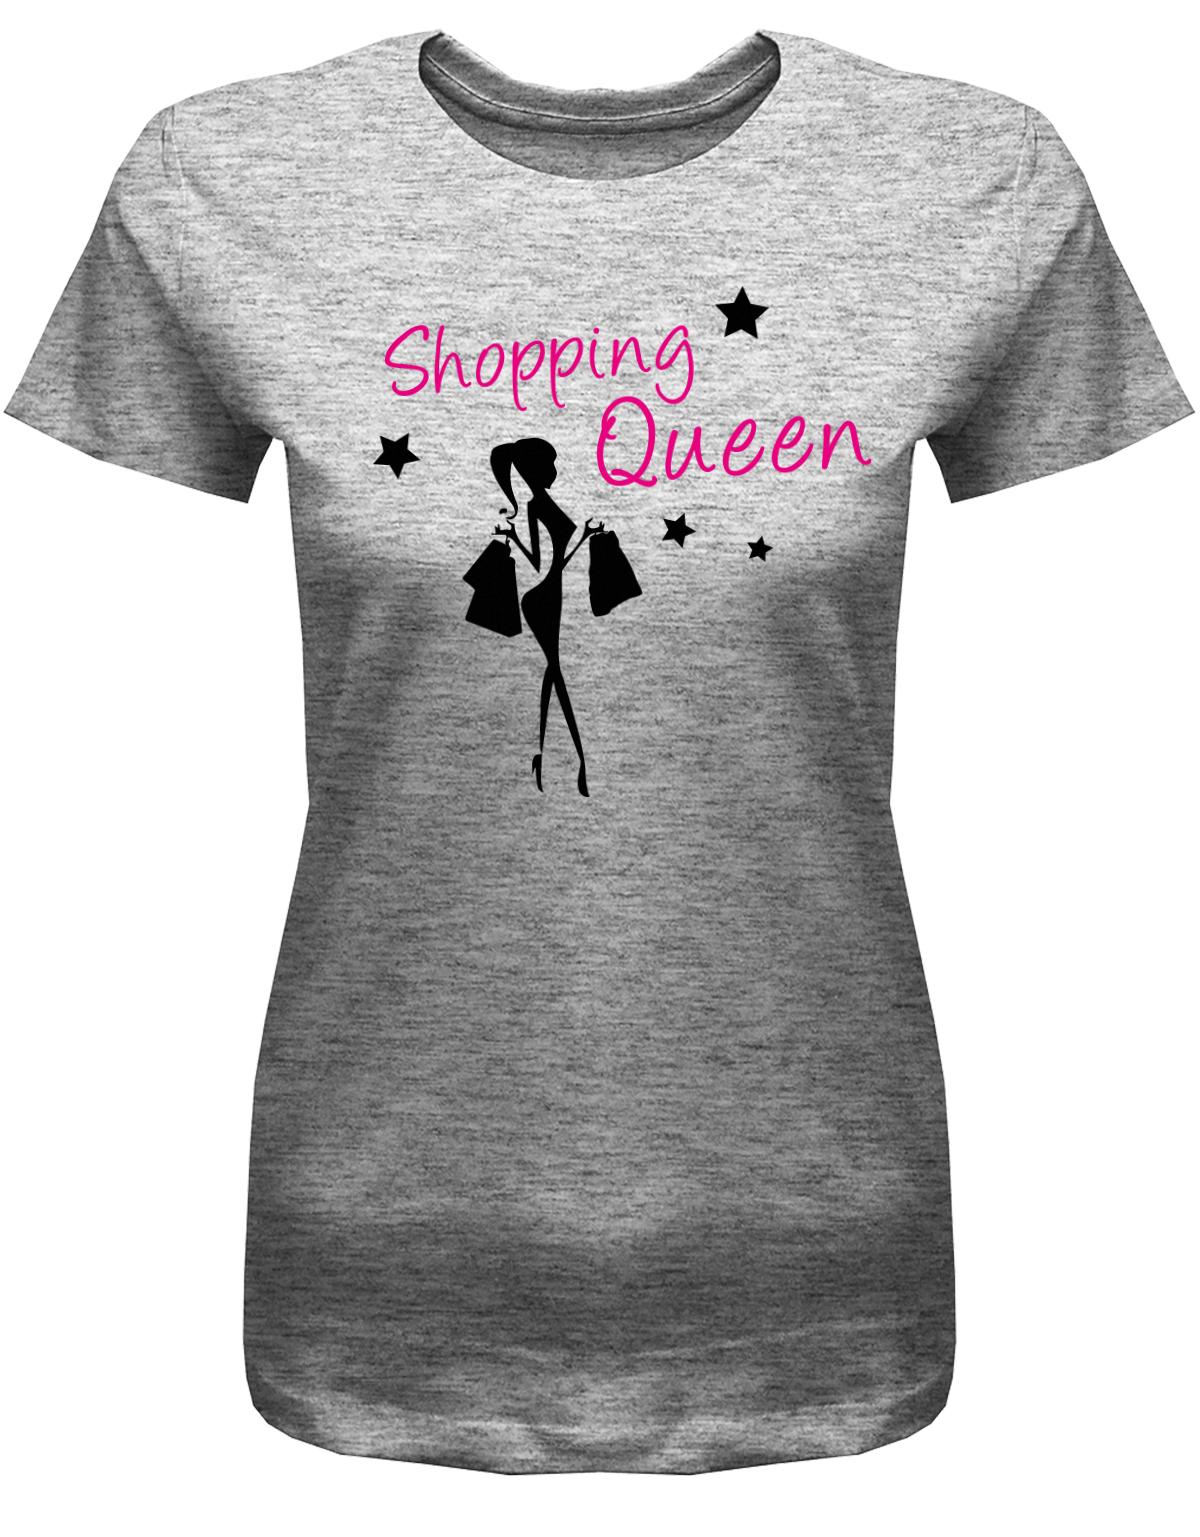 shopping-queen-damen-shirt-grau